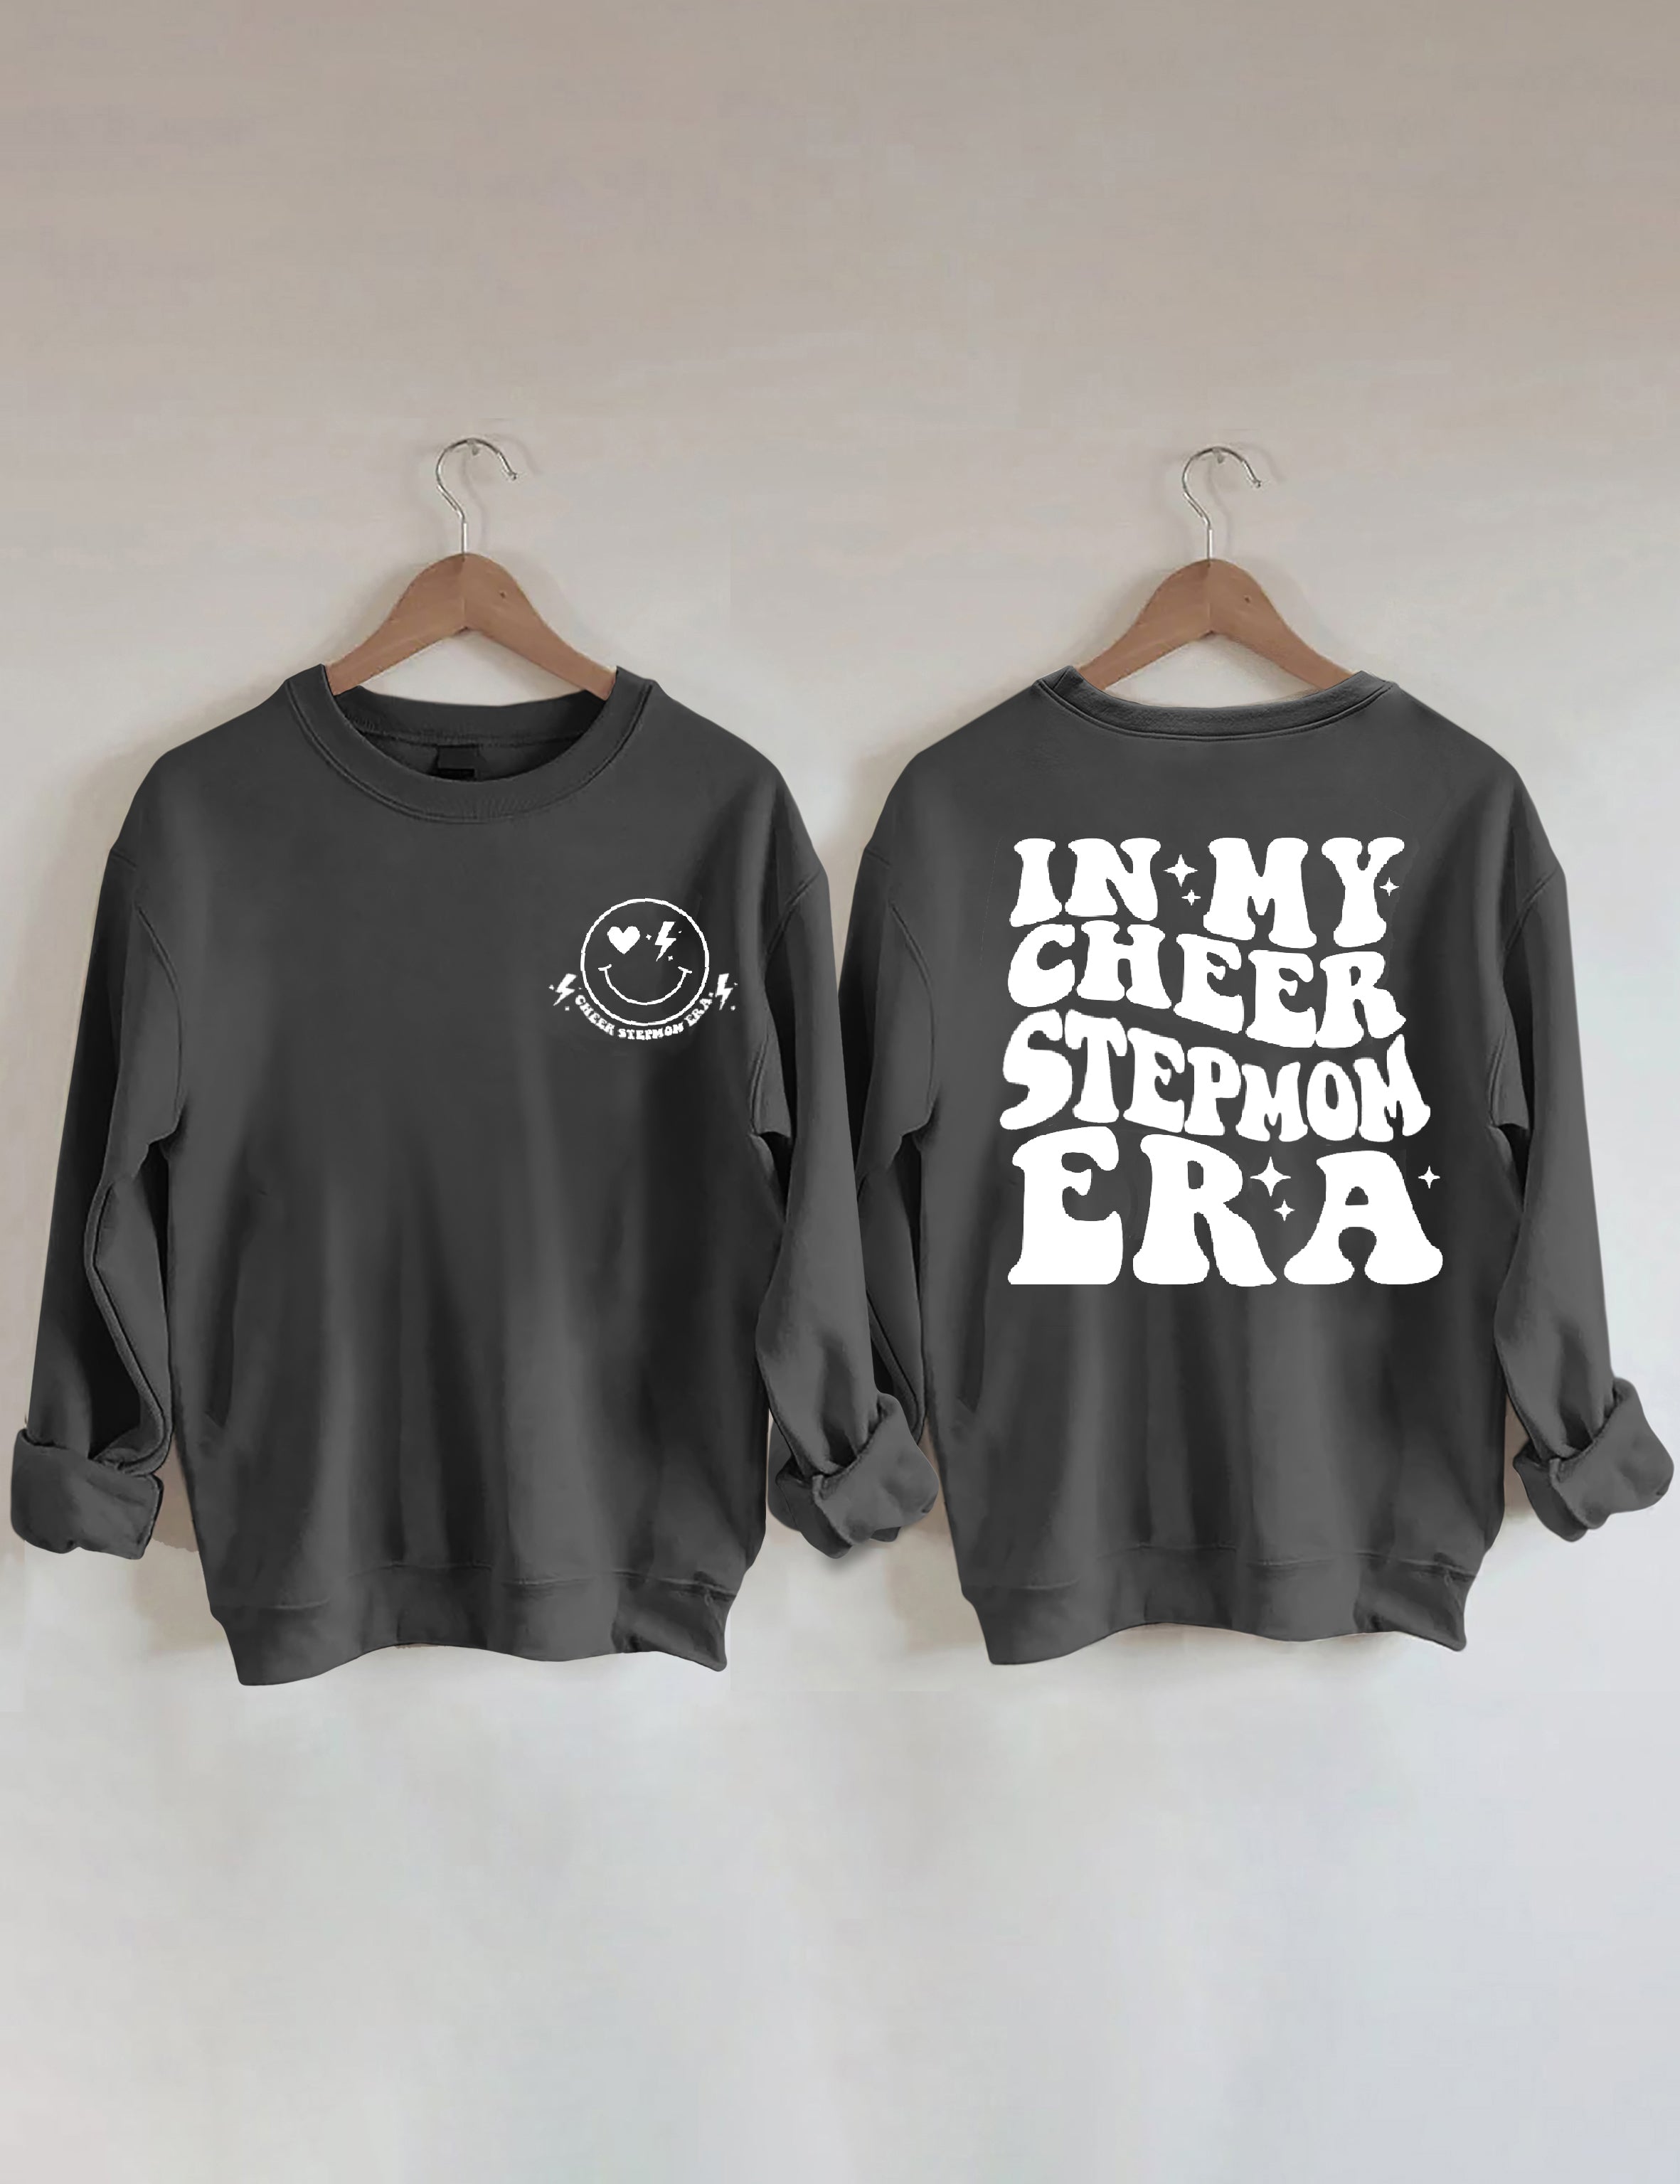 In My Cheer Stepmom Era Sweatshirt